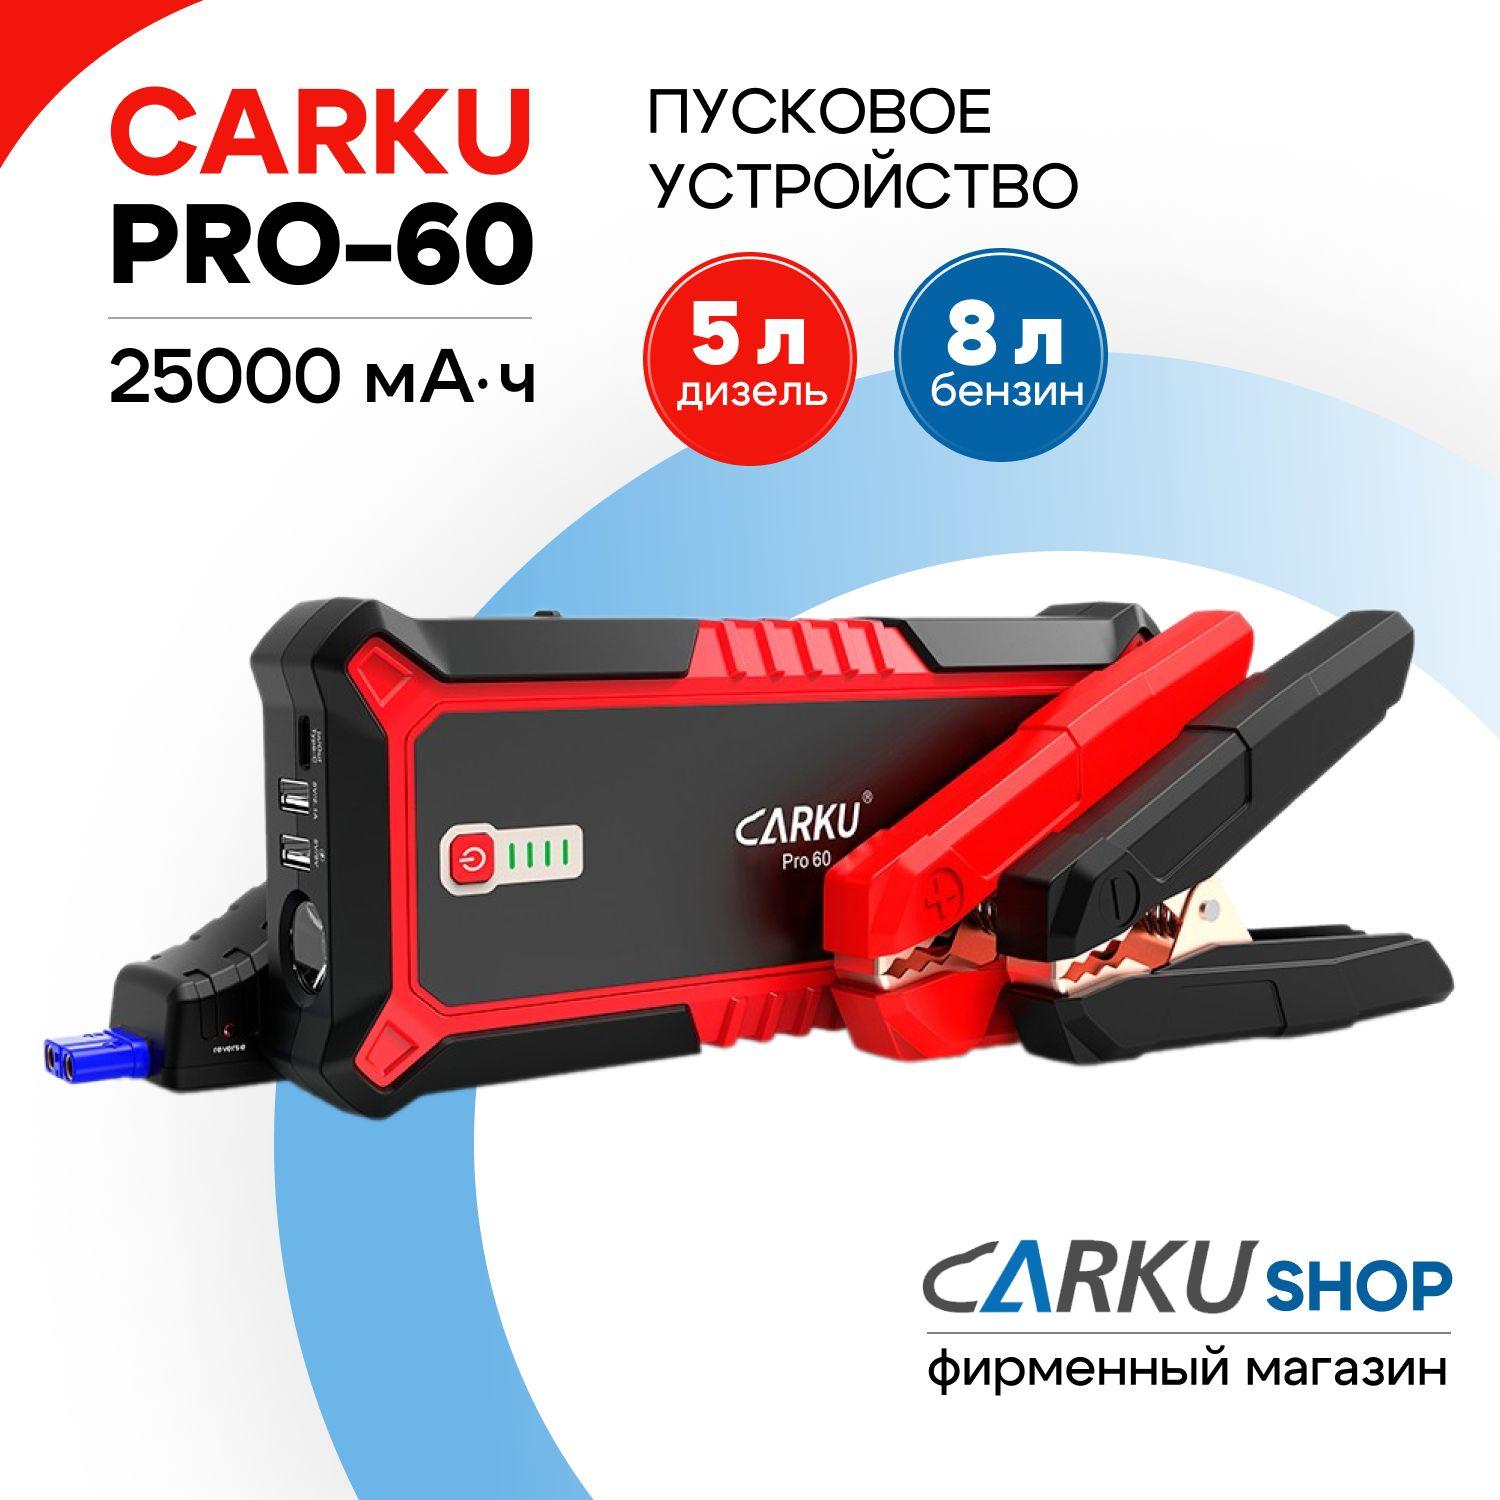 CARKU PRO-60 - портативное пусковое устройство для автомобиля 12В (25000 мАч, пусковой ток 600А, пиковый ток 1500А)